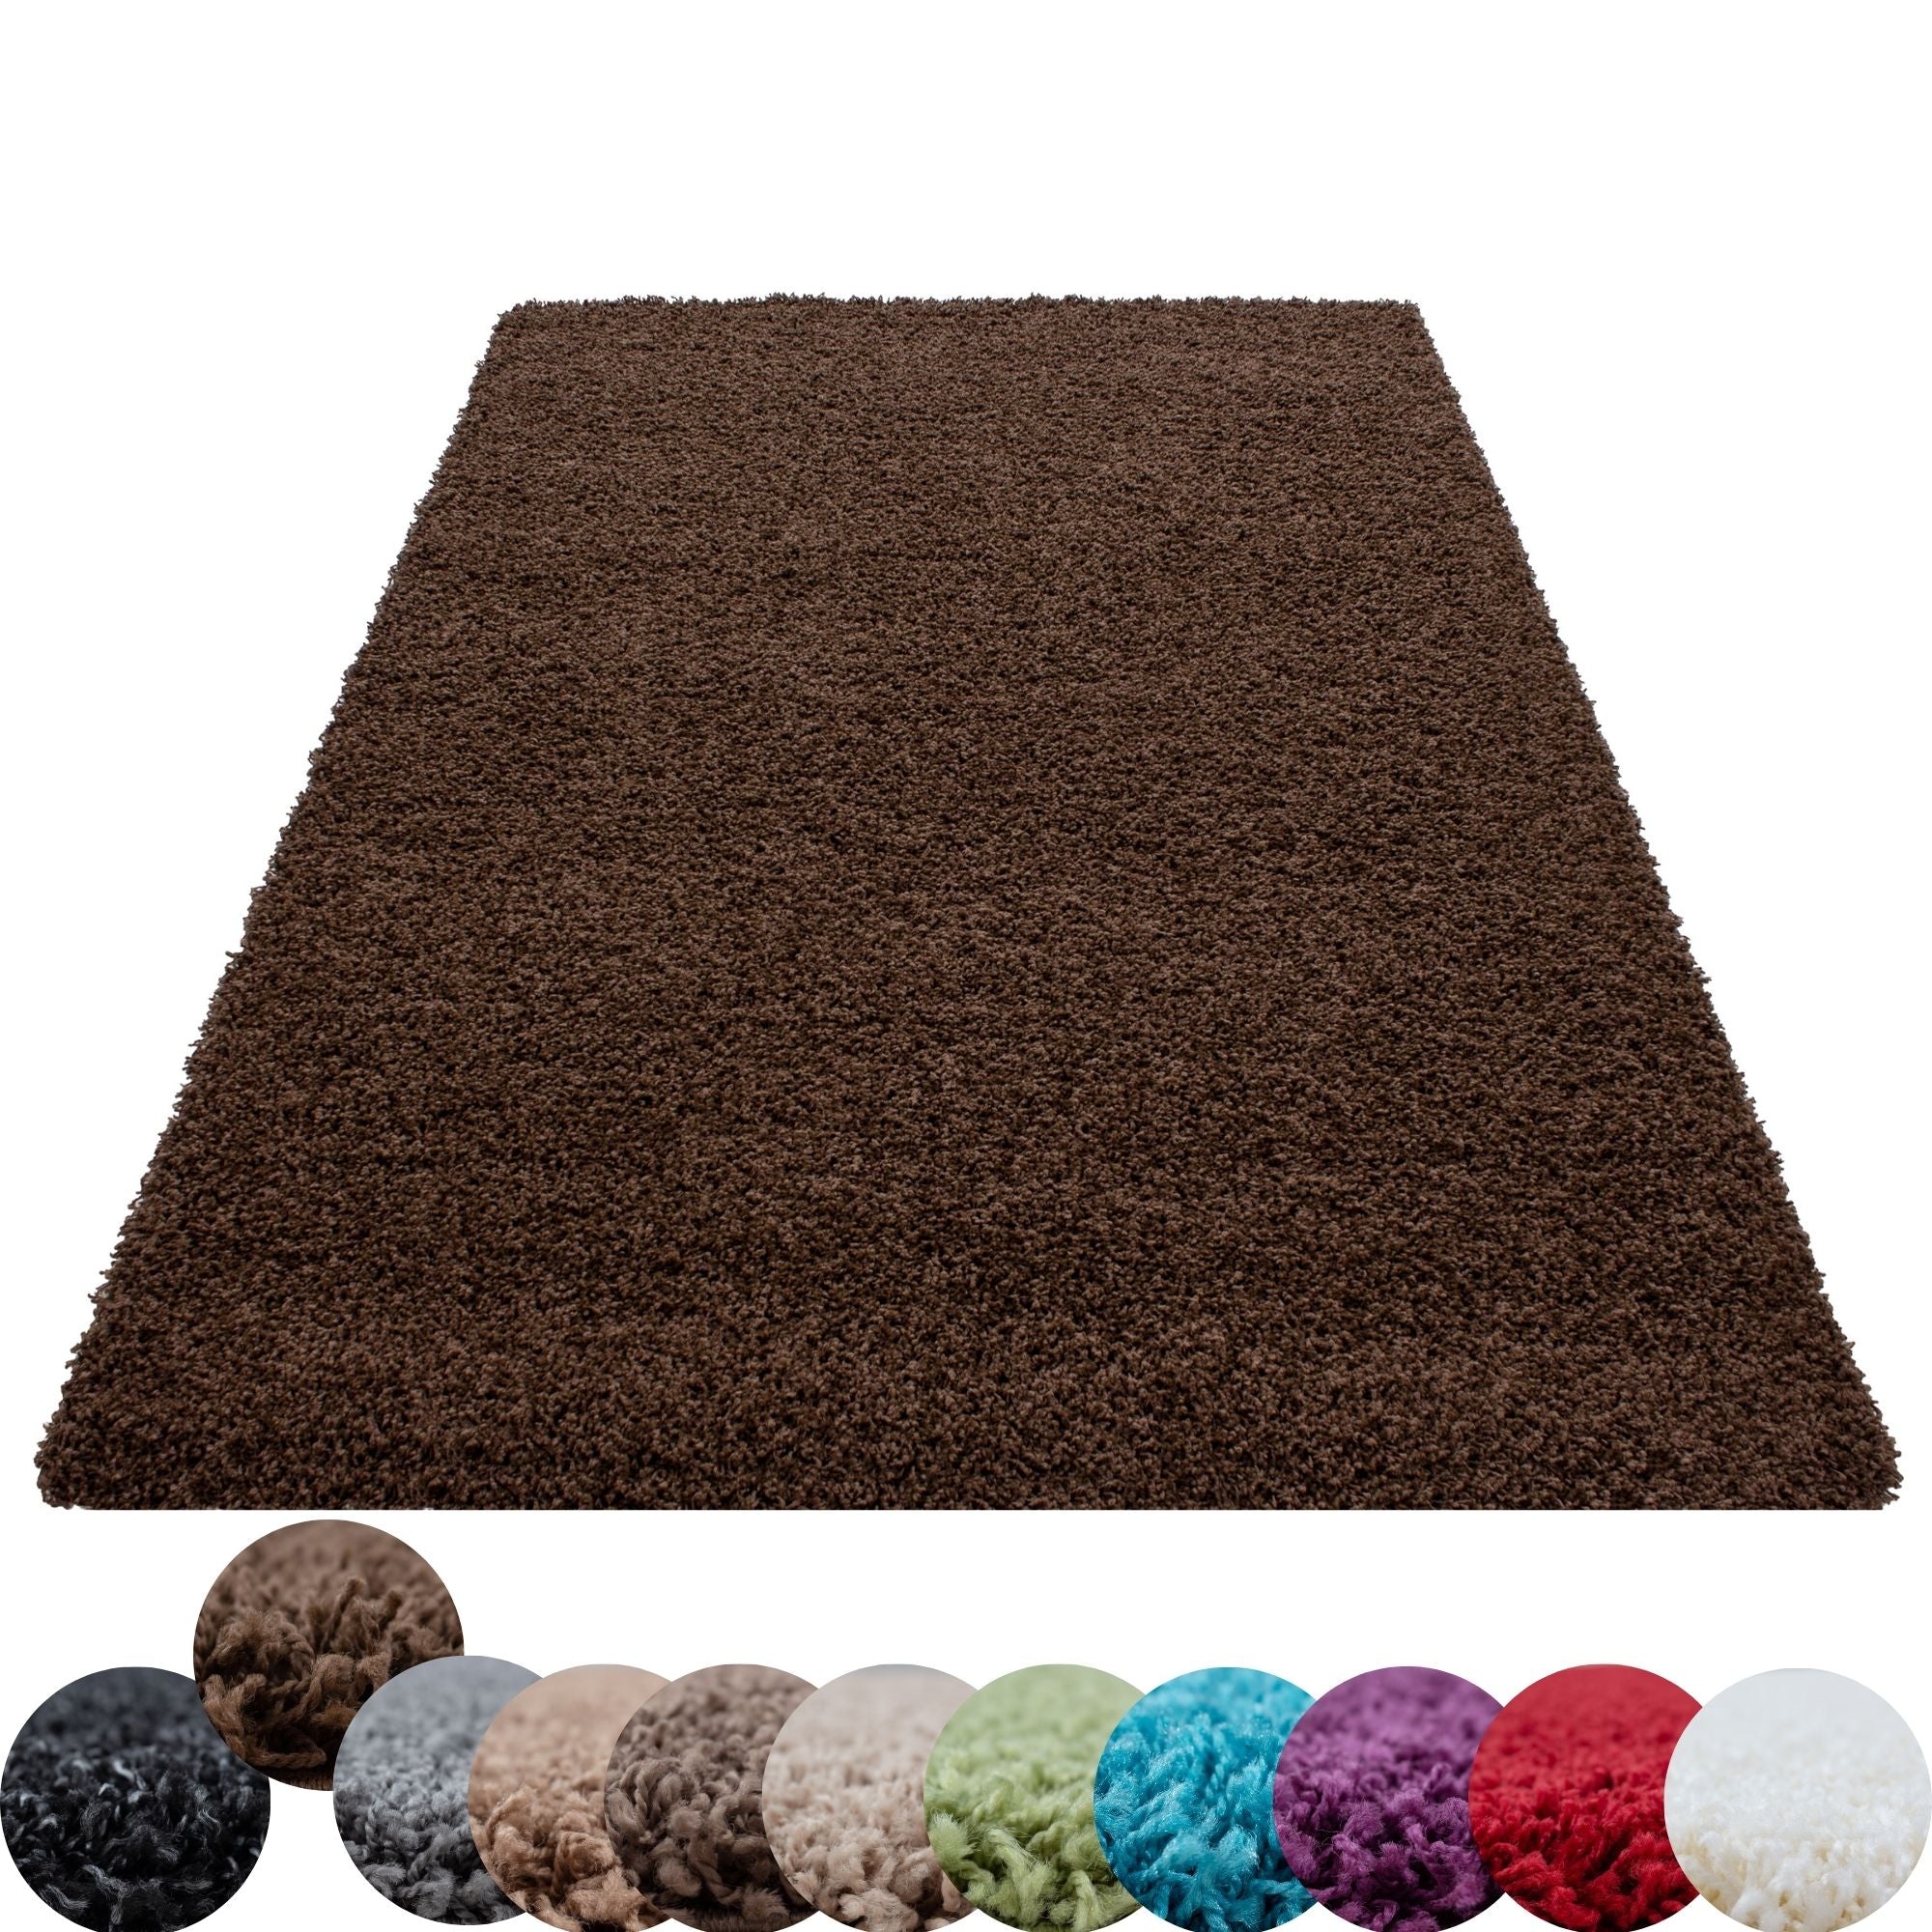 Hochflor Shaggy Langflor Wohnzimmer Teppich Weich Soft Einfarbig Florhöhe 50 mm